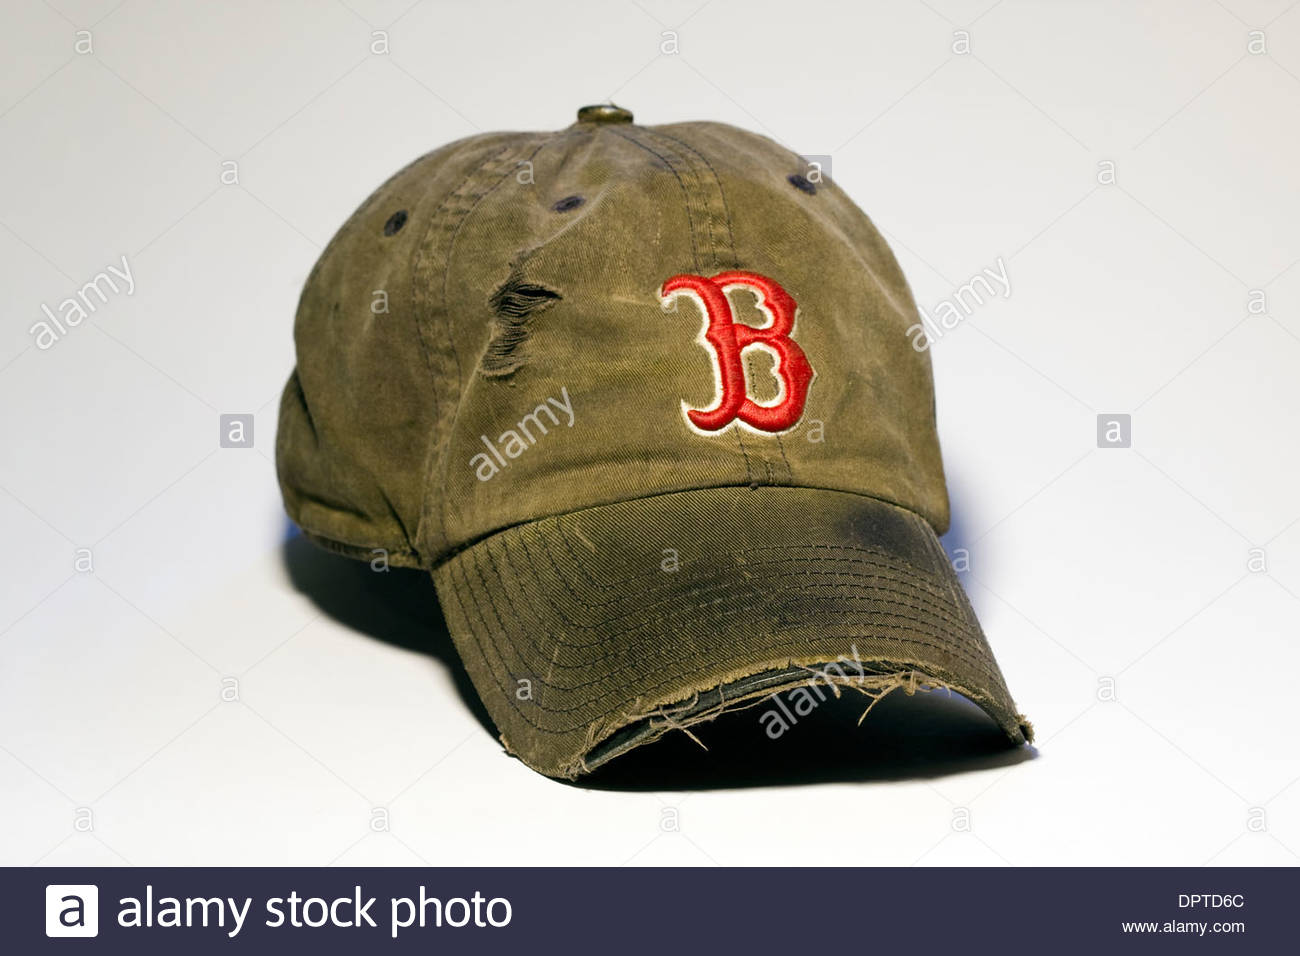 Un bien usé, fané, lambeaux et élimés, Boston Red Sox Baseball Cap sur fond blanc Banque D'Images